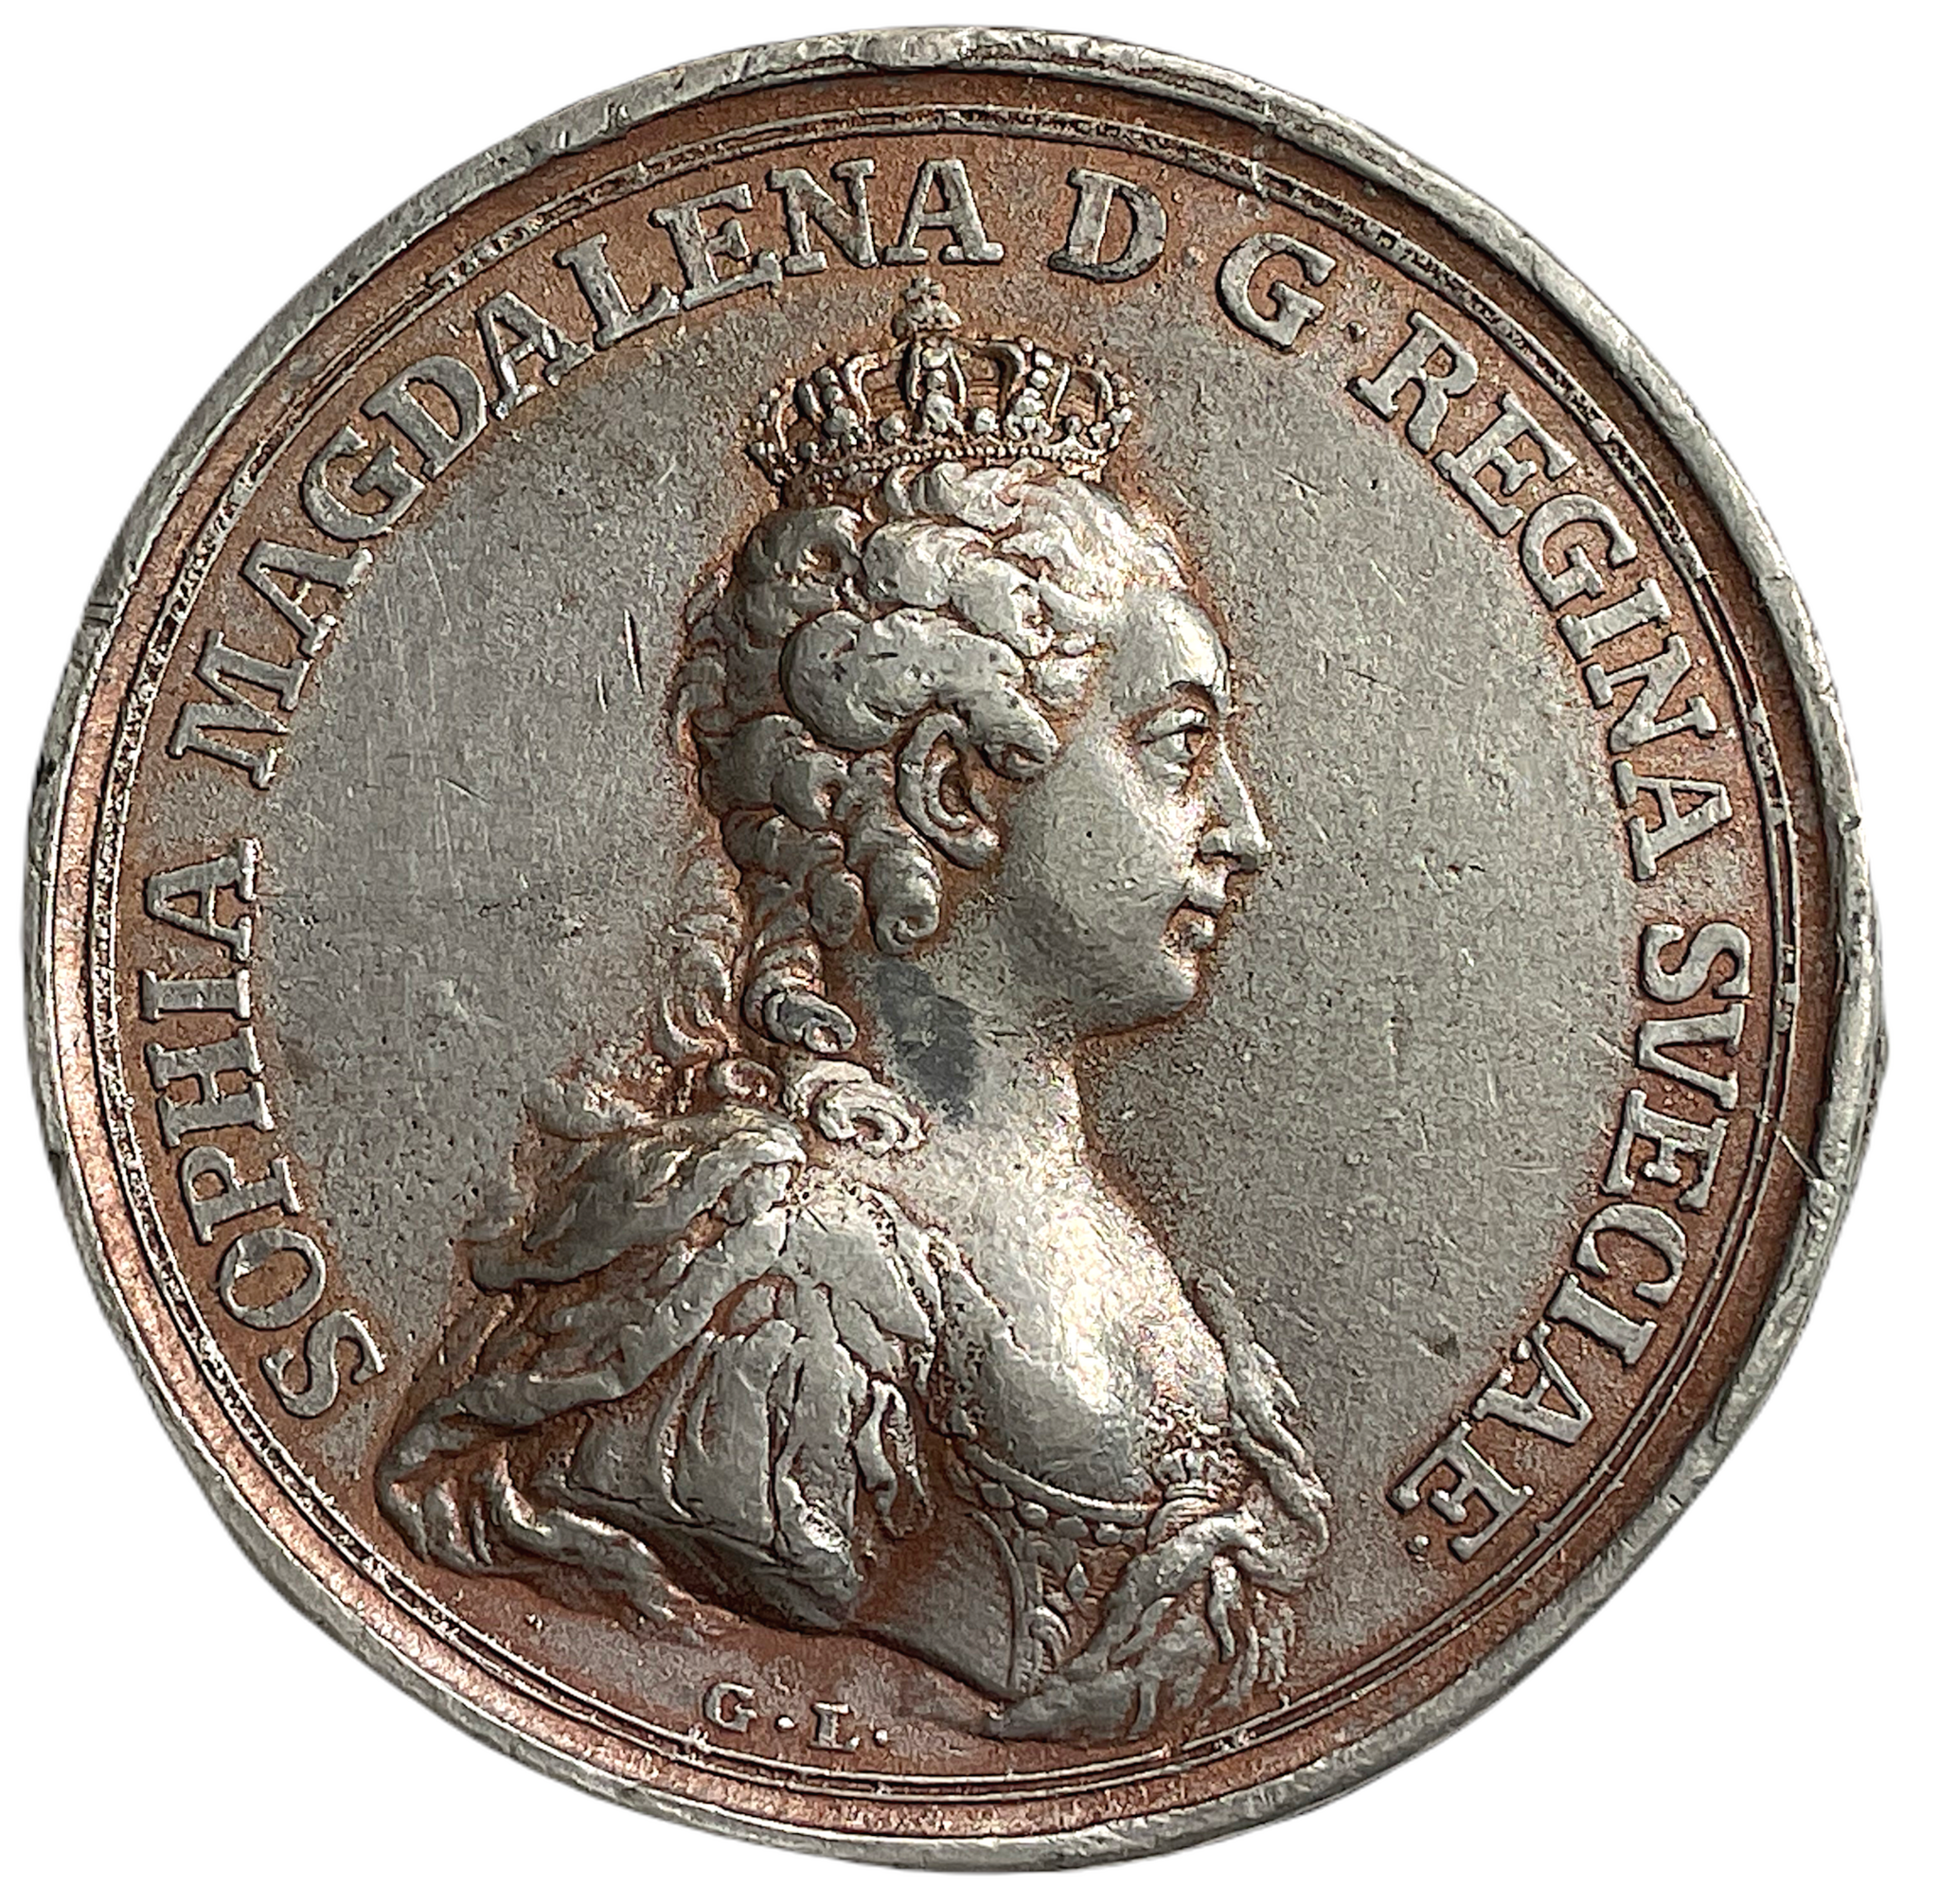 Drottningens kröning i Stockholms storkyrka den 29 maj 1772 - Gjuten i tenn - Mycket sällsynt